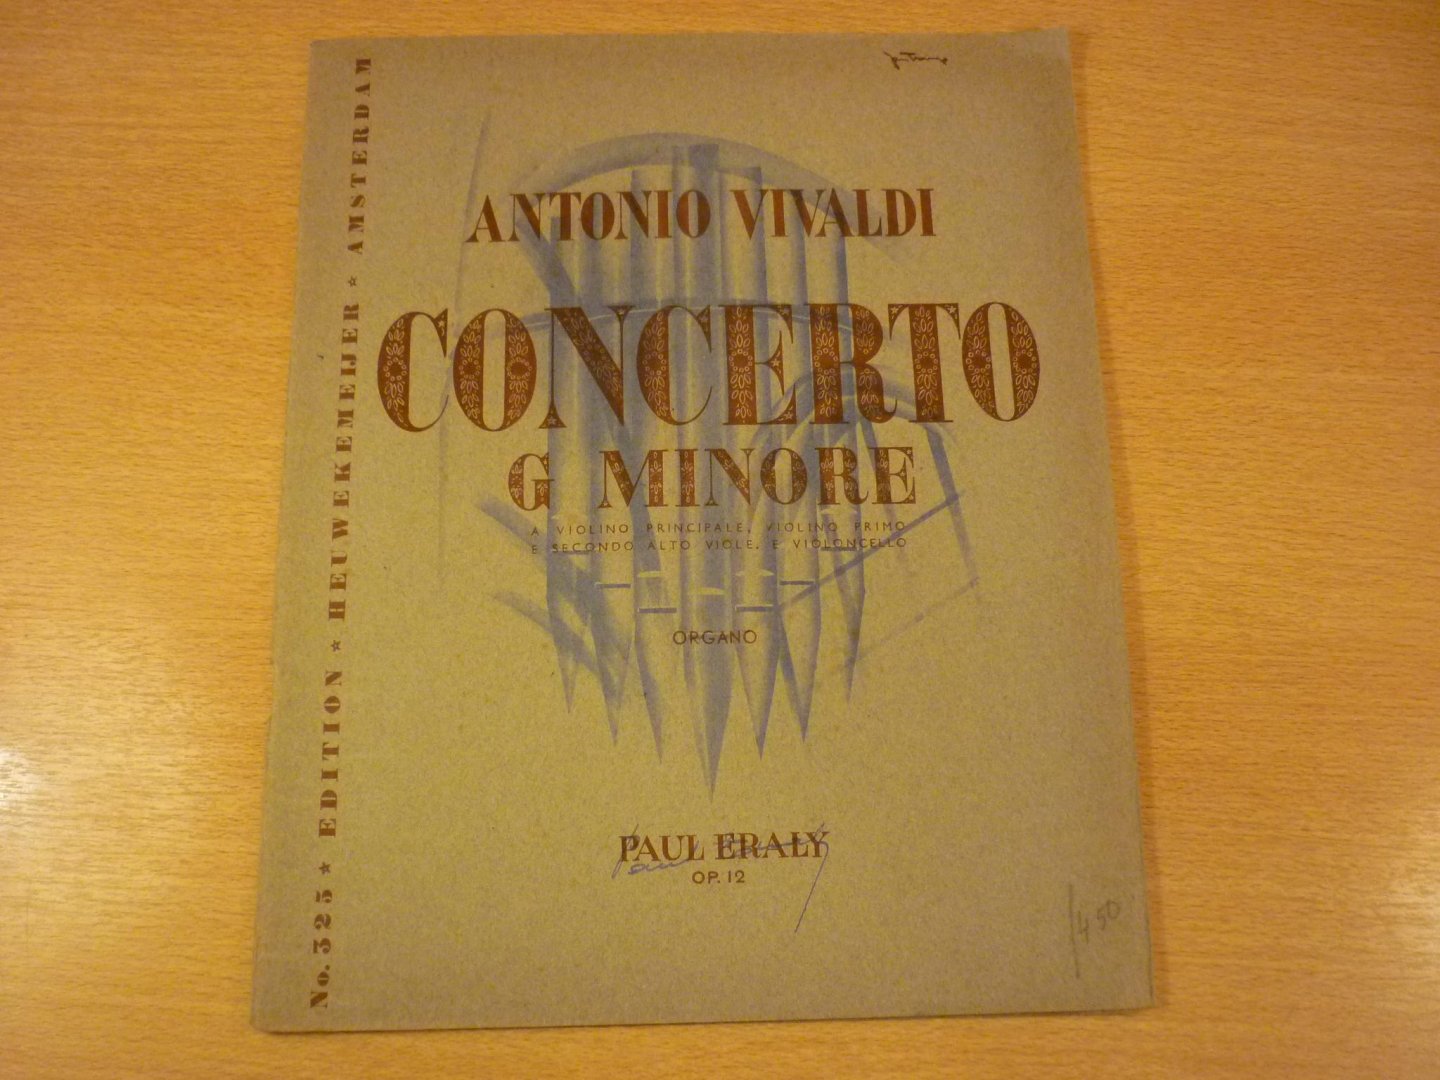 Vivaldi; A. - Concerto G. Minore - Organo; (Paul Eraly); Op. 12